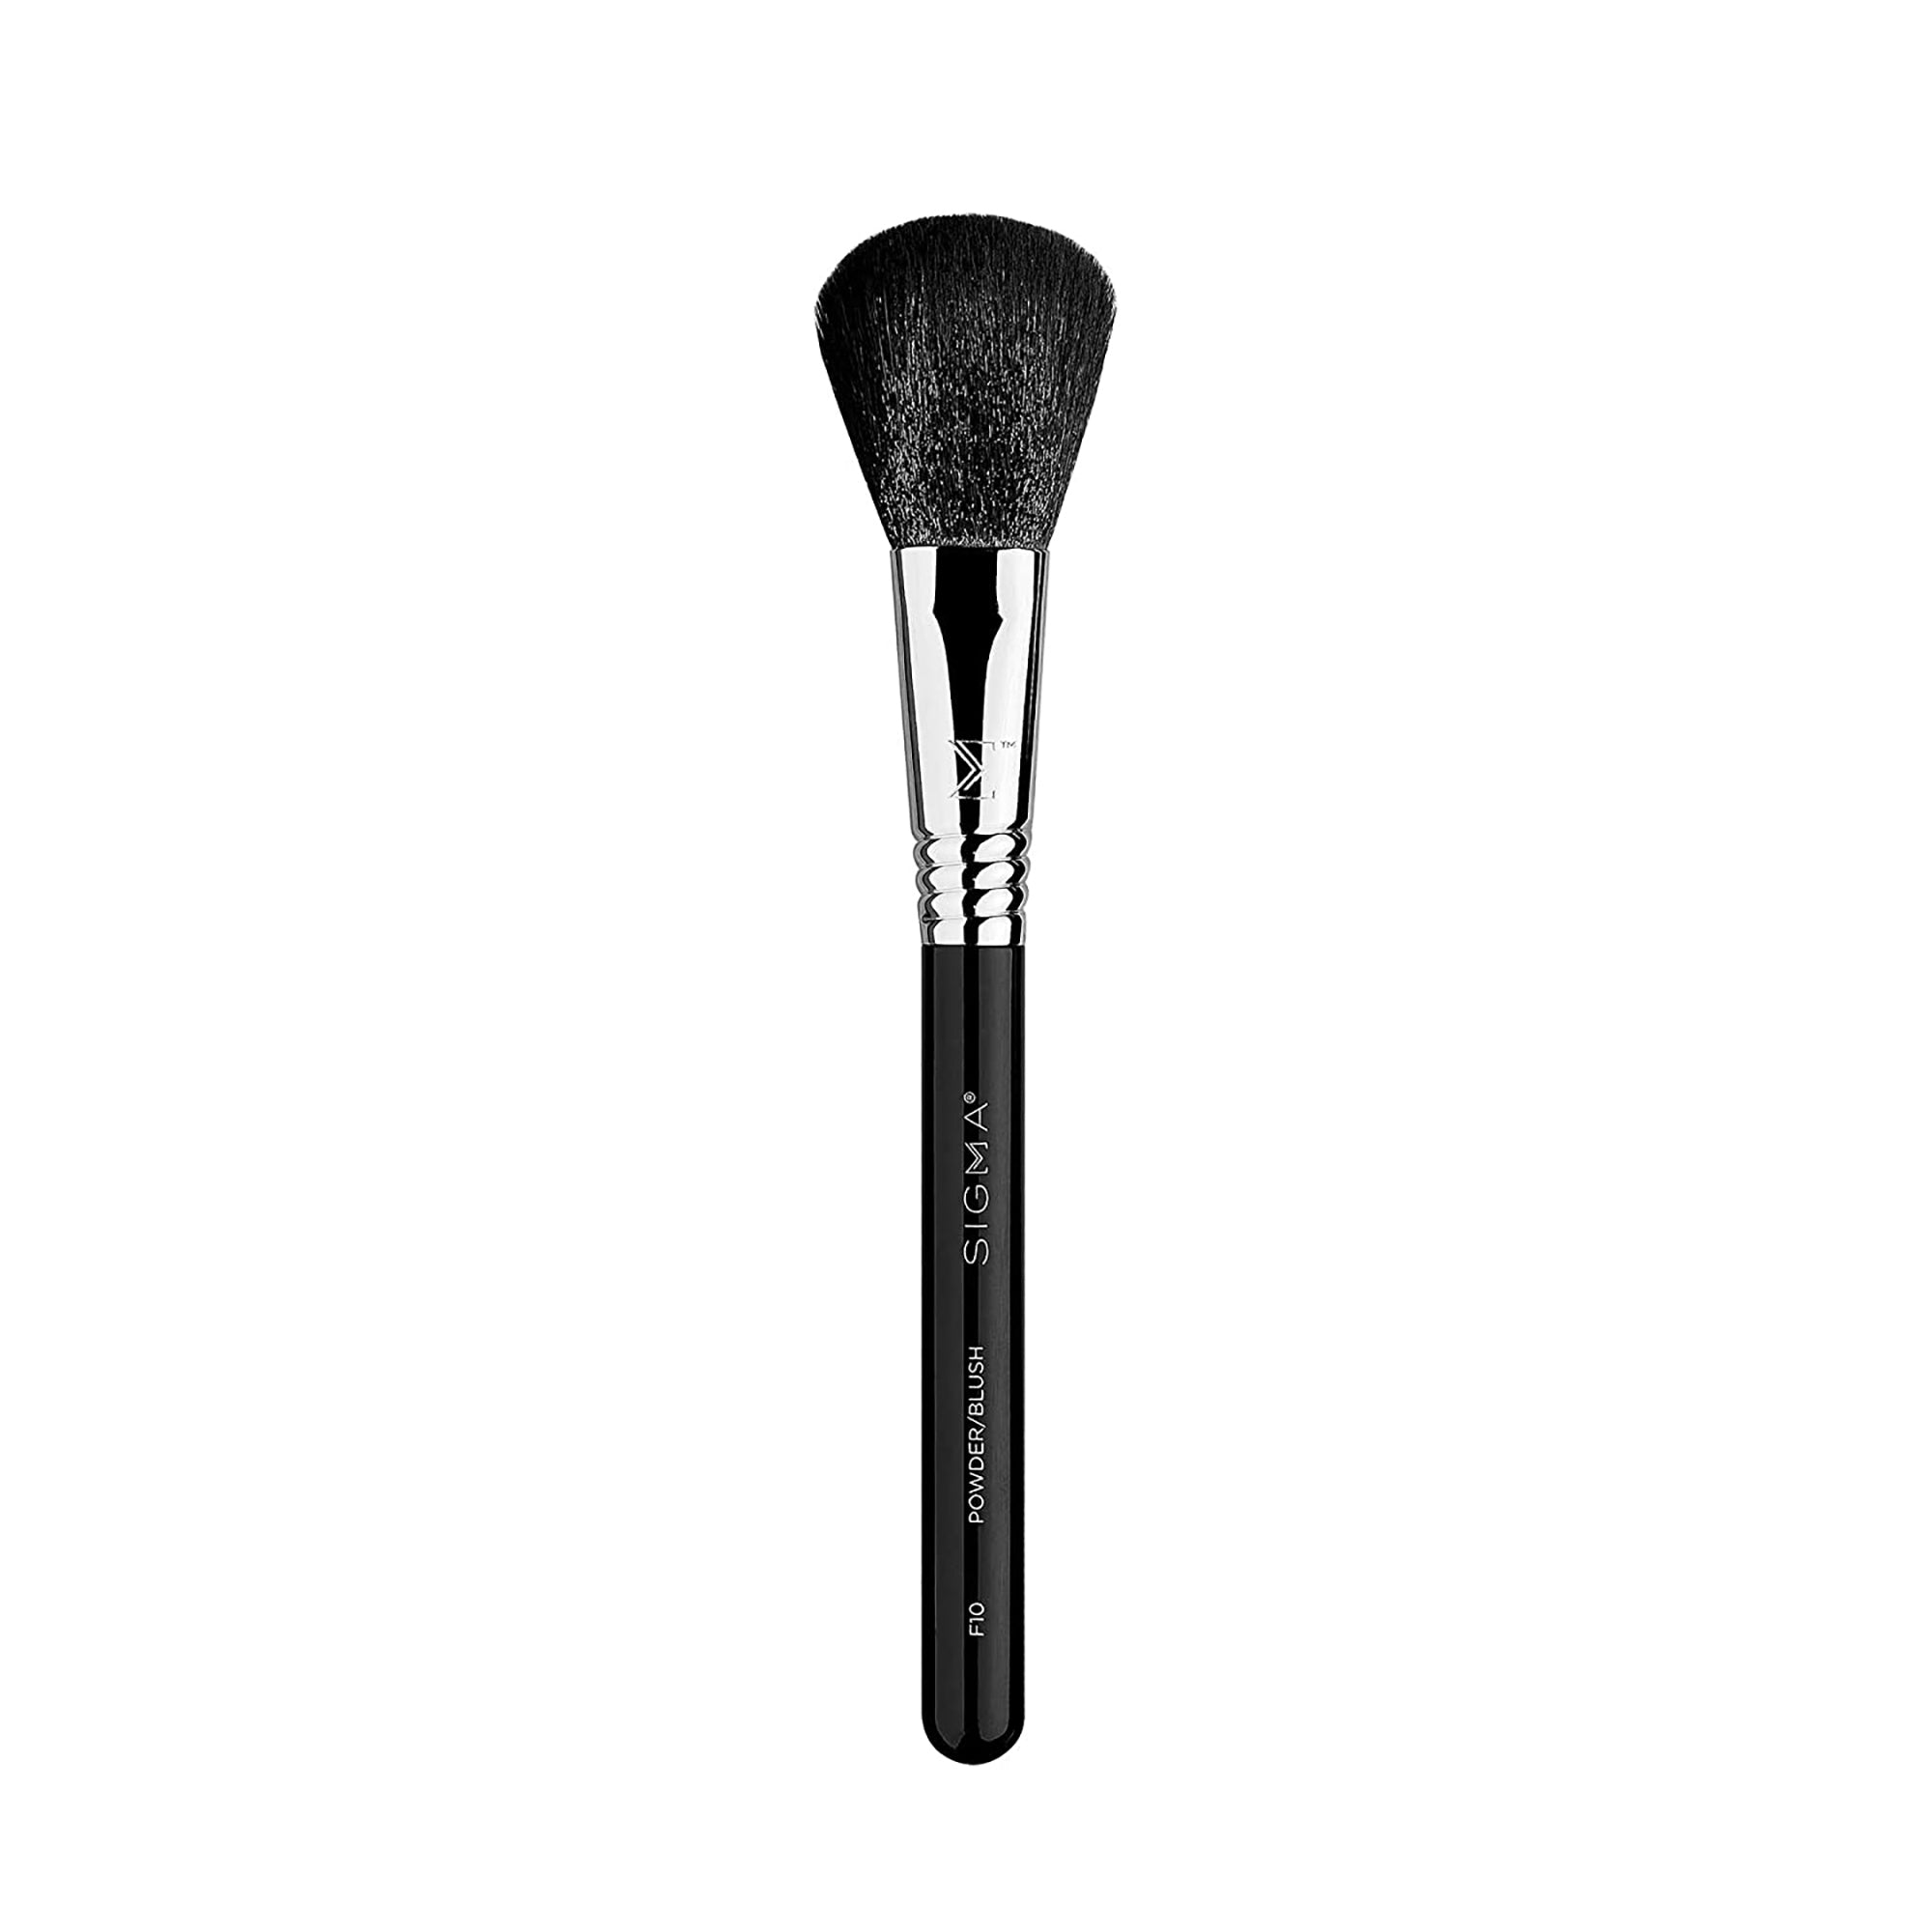 Sigma Beauty Powder/Blush Brush - F10